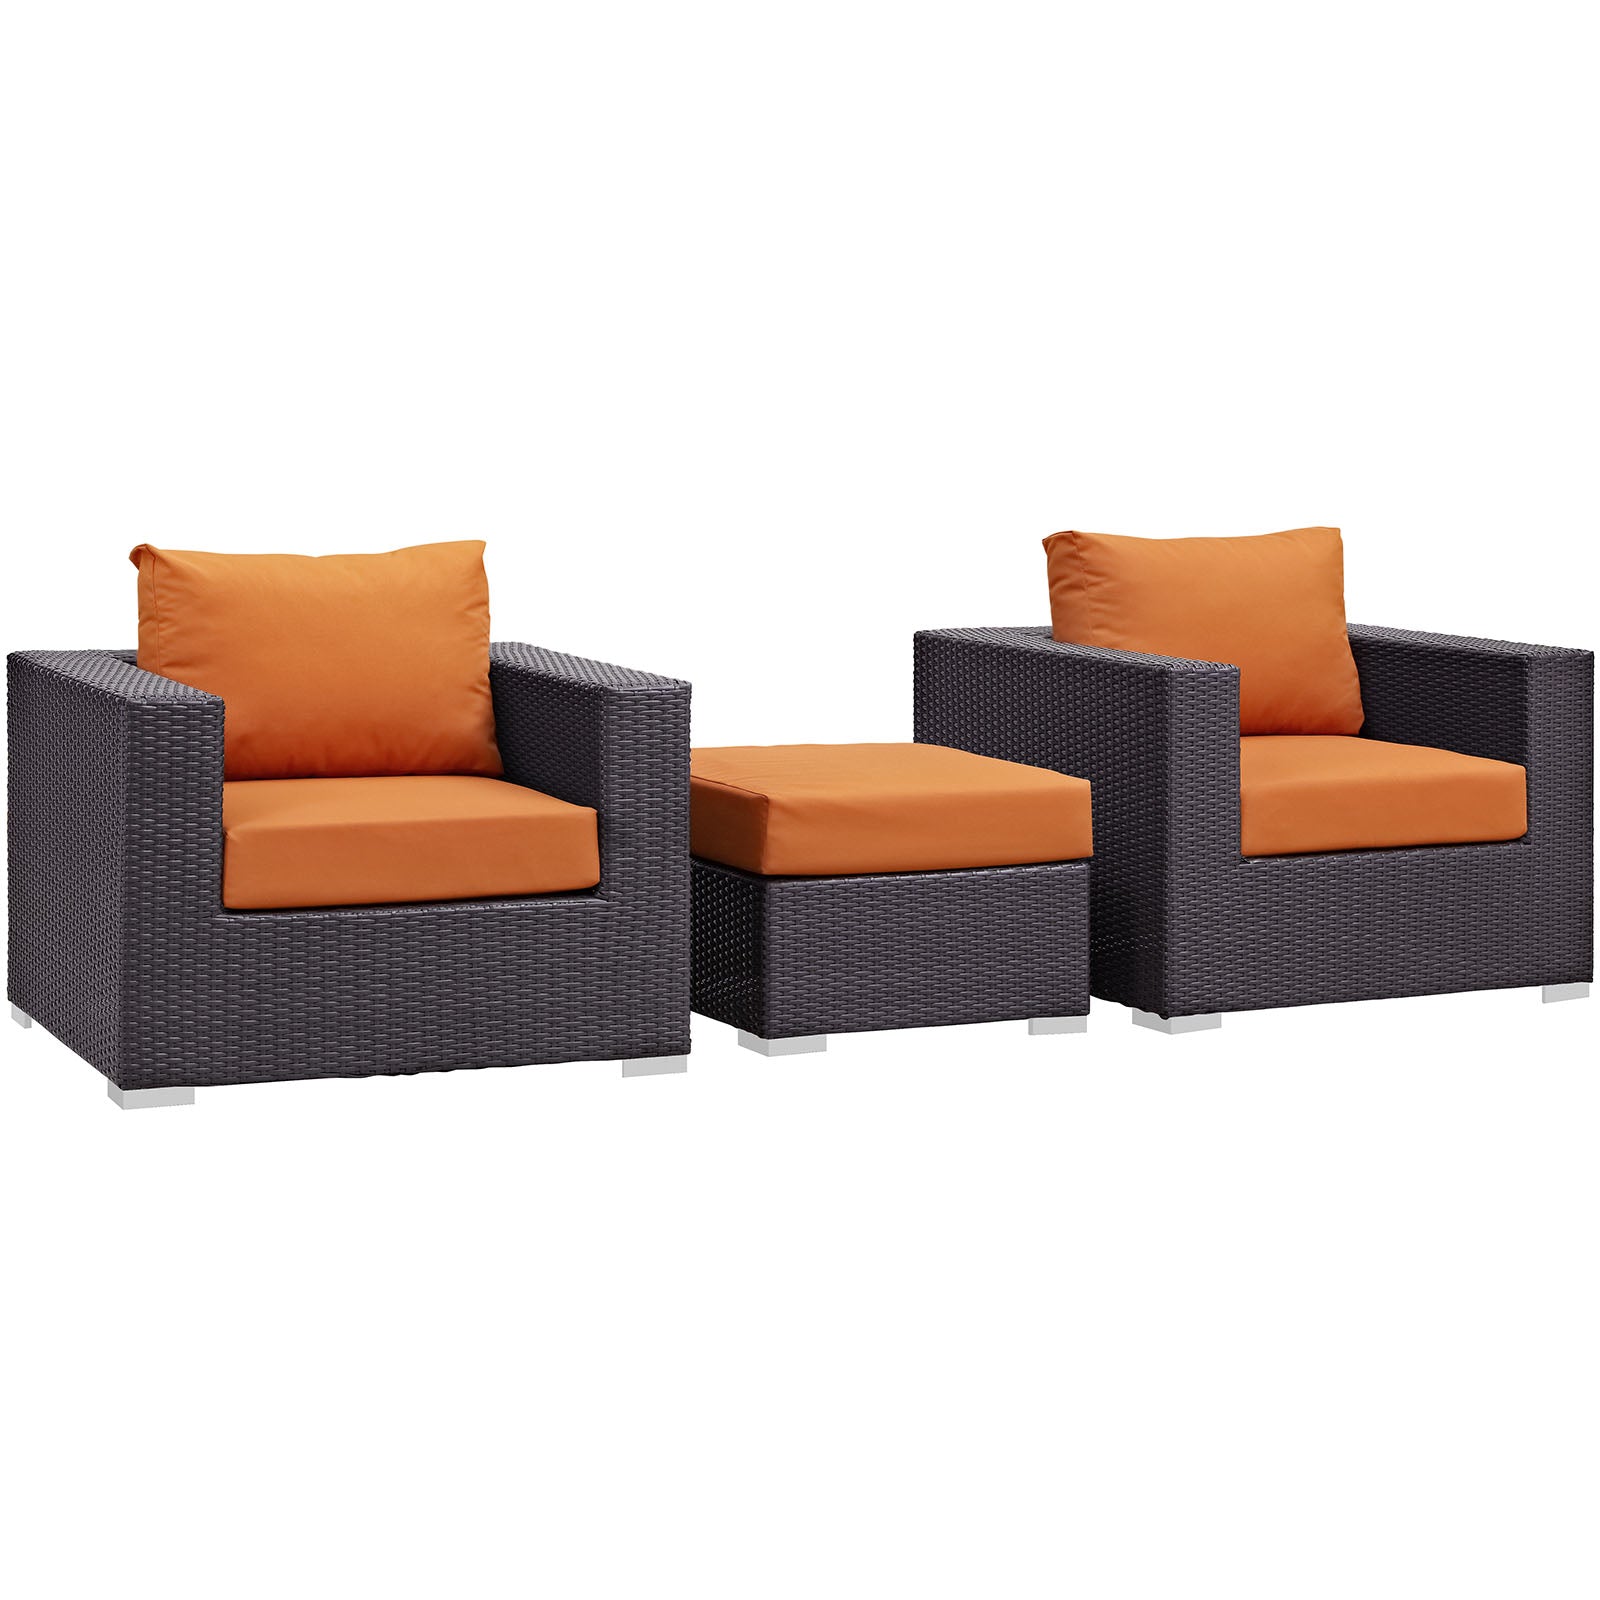 Modway Outdoor Conversation Sets - Convene 3 Piece Outdoor Patio Sofa Set Espresso Orange